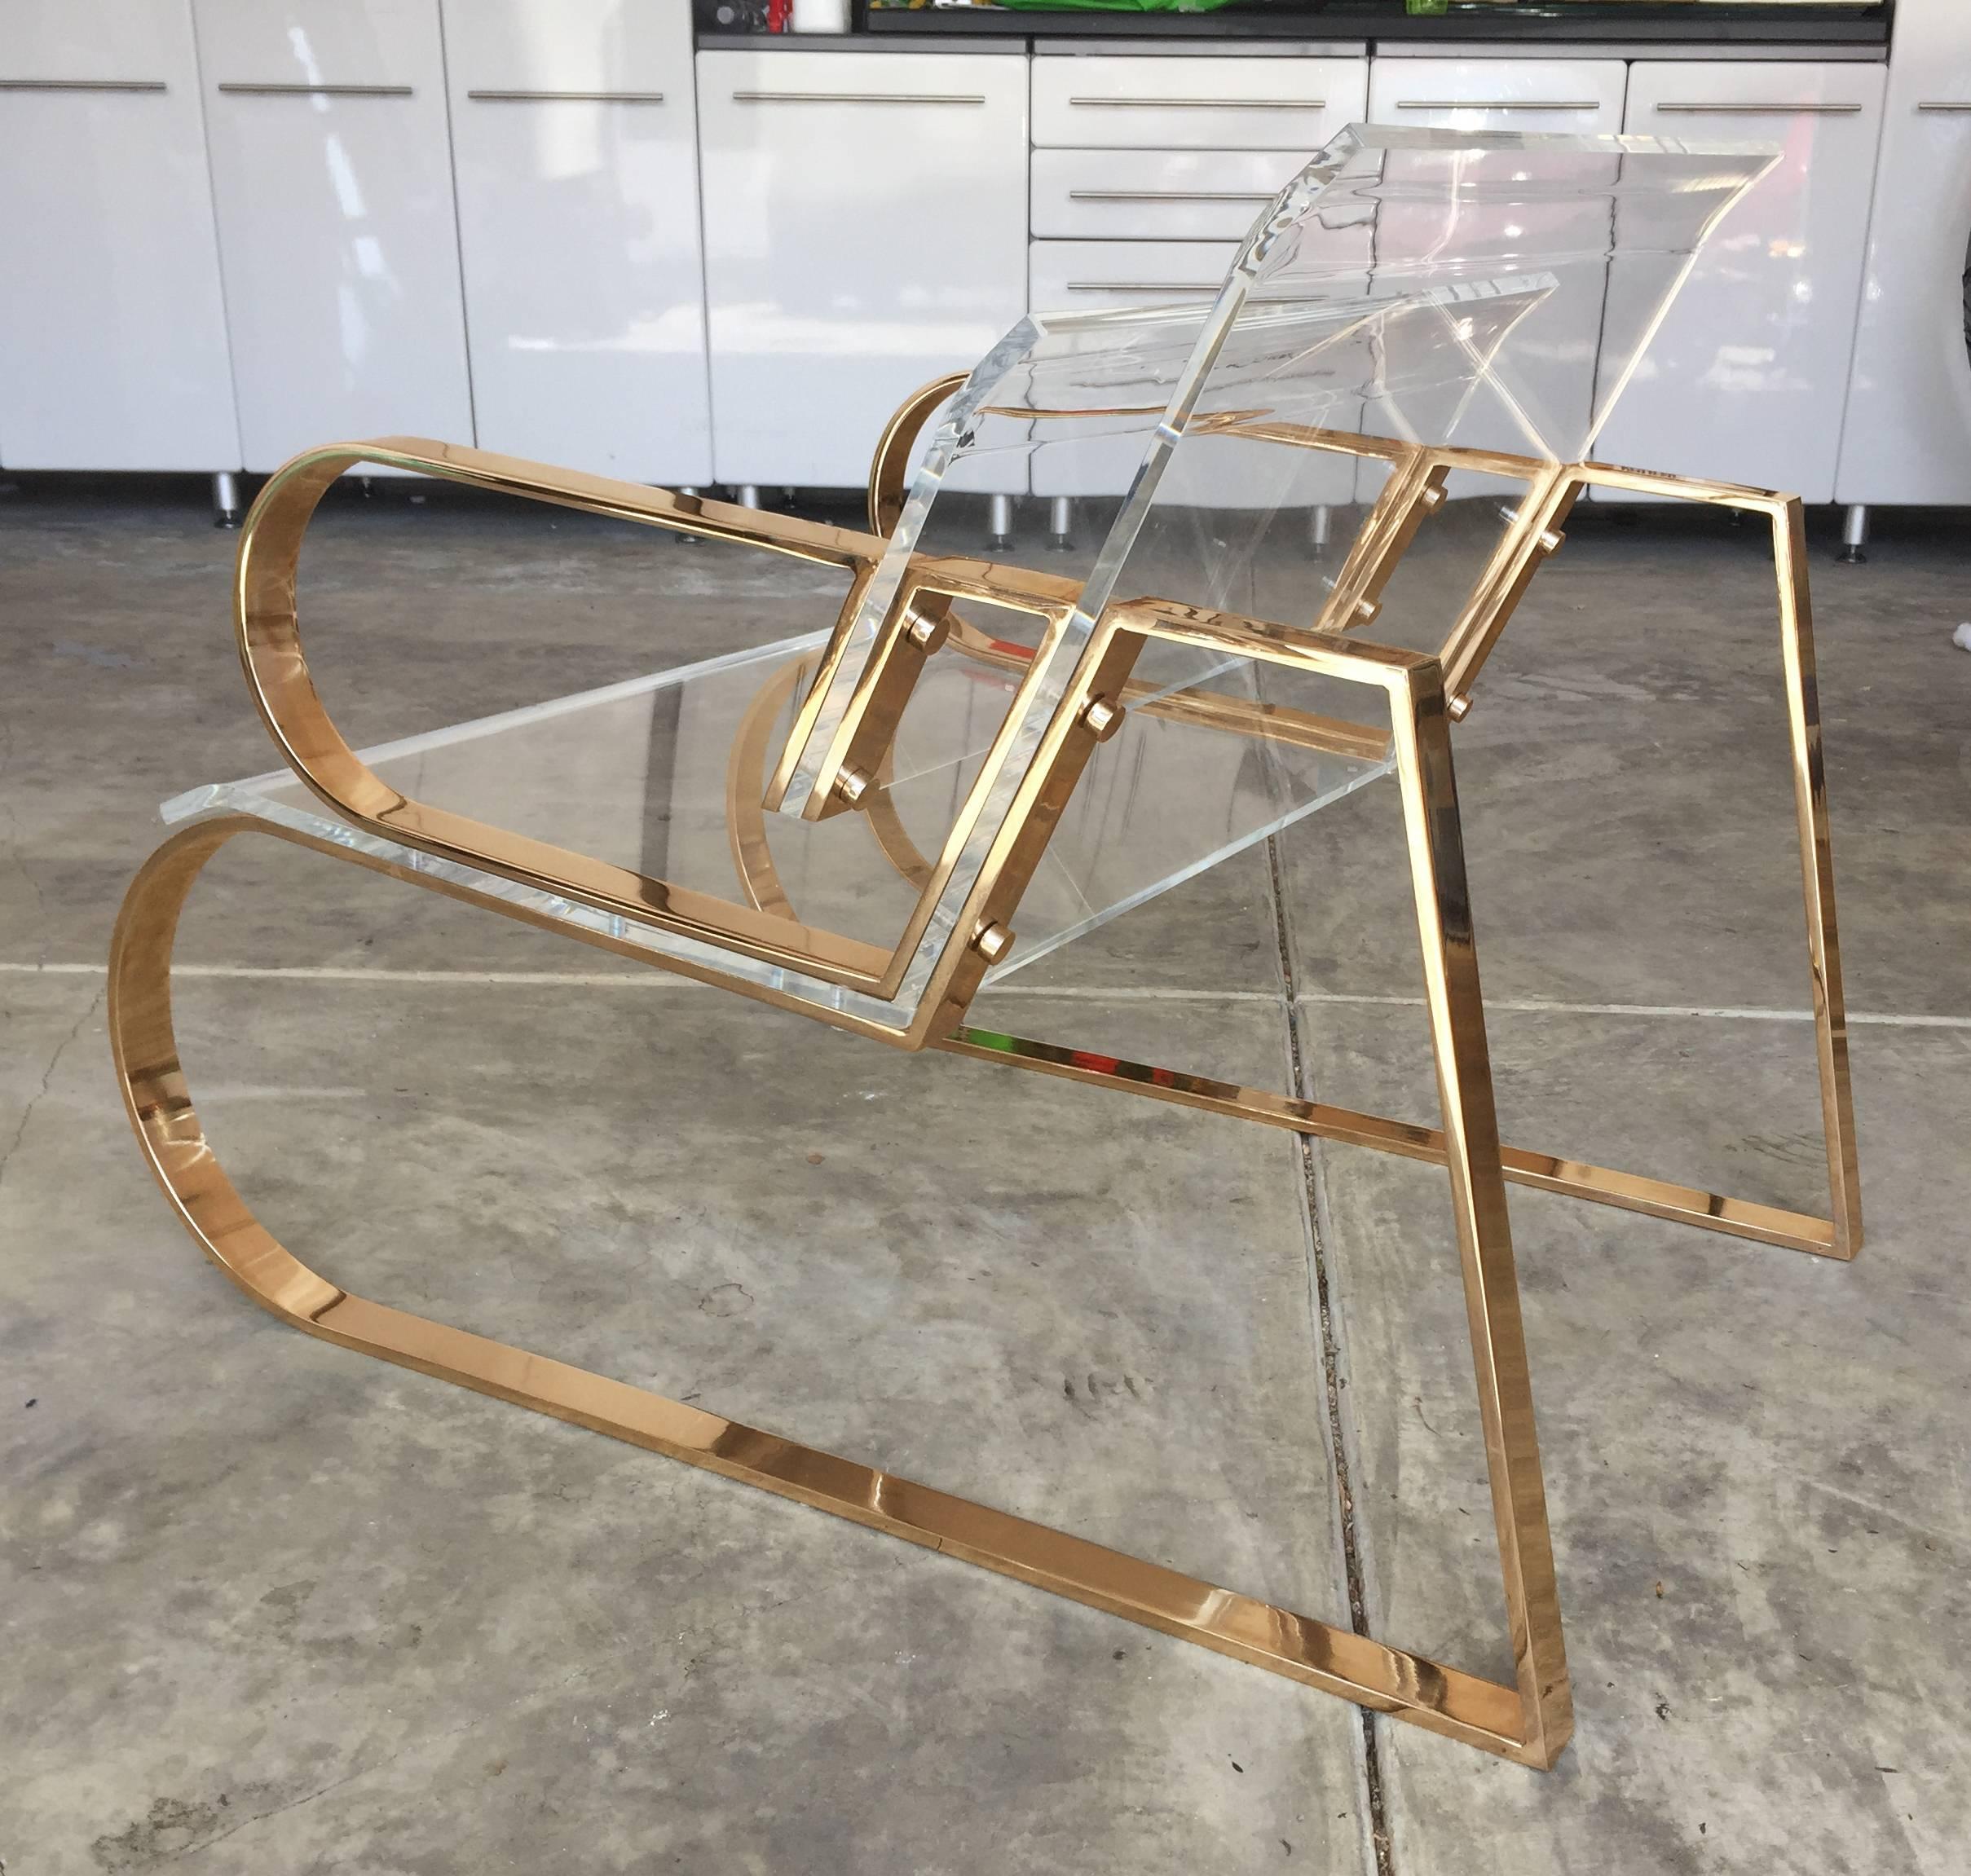 Paire de superbes chaises longues en Lucite et acier inoxydable du célèbre designer Charles Hollis Jones.
Les chaises sont issues de la collection Double Waterfall fabriquée en 2016.
La chaise Double Waterfall fait partie de la ligne